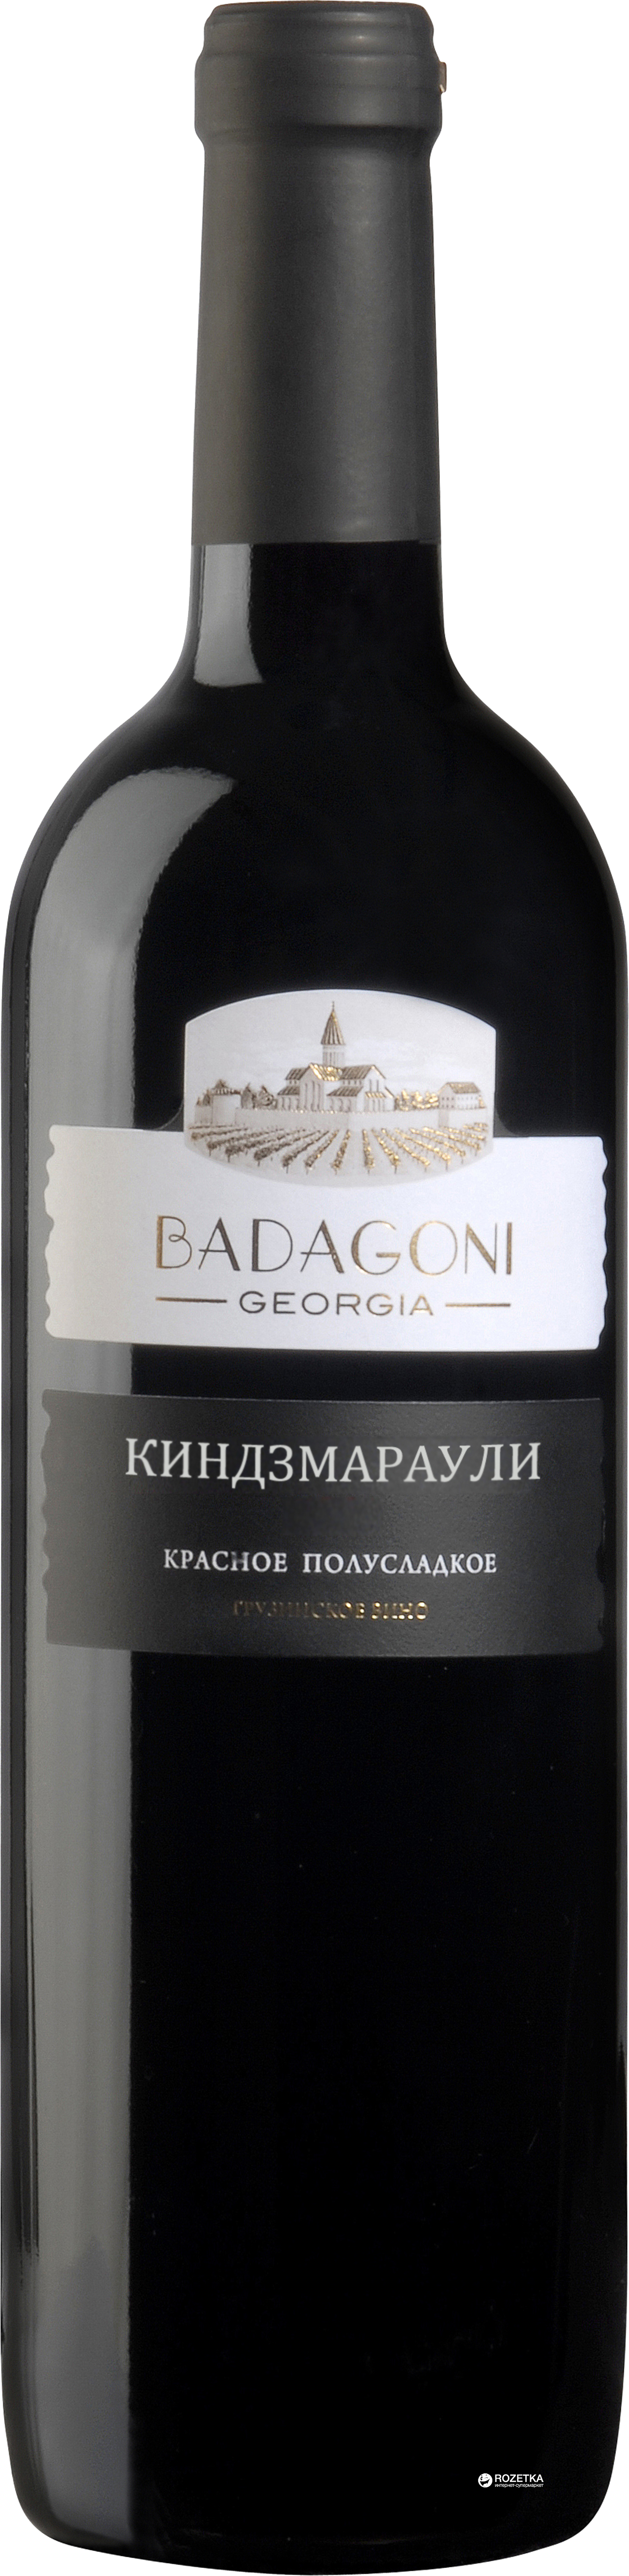 Акция на Вино Бадагони Киндзмараули красное полусладкое 0.75 л 11% (4860006040419) от Rozetka UA